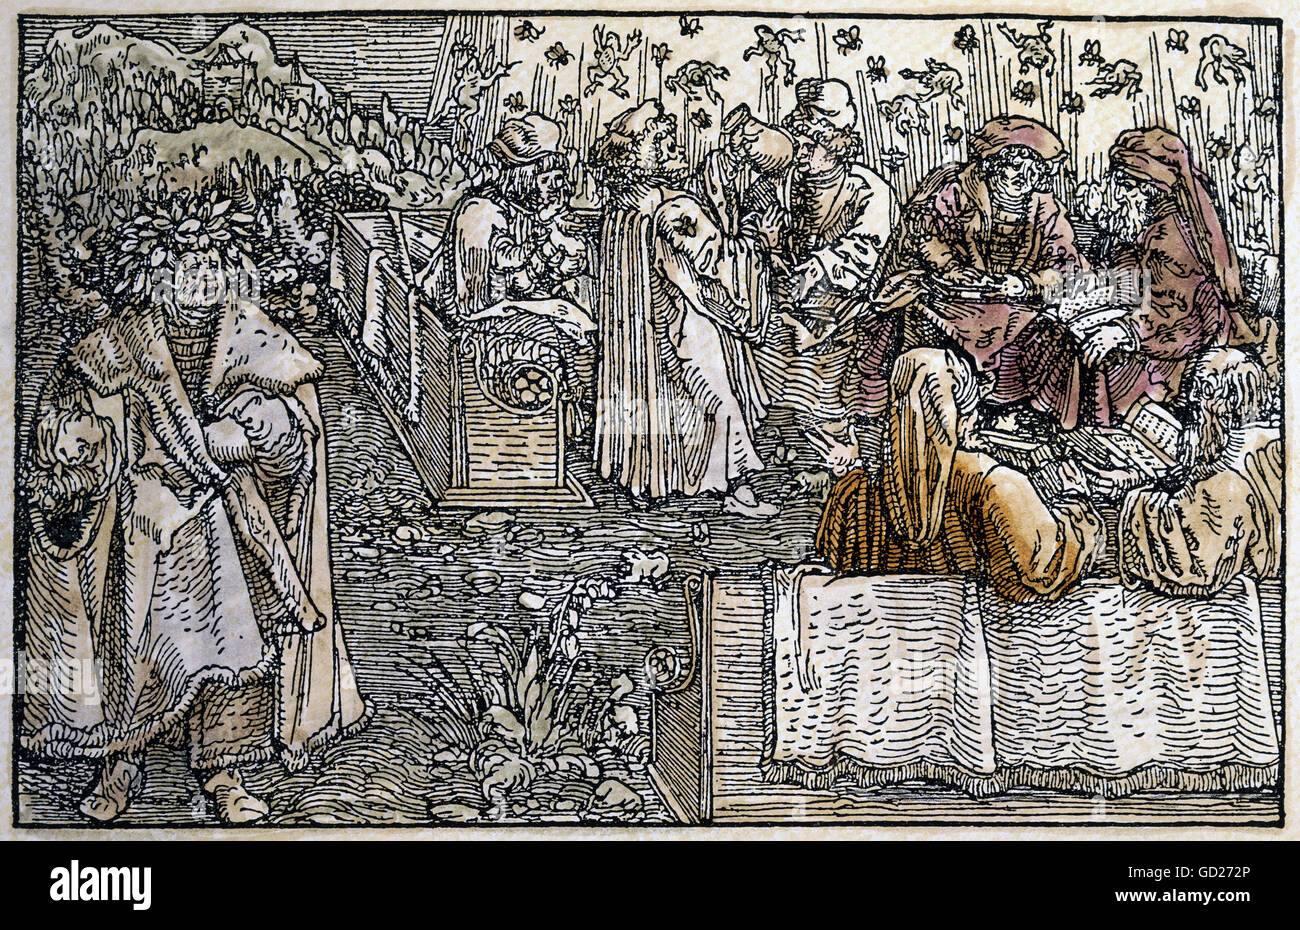 Mittelalter, Allegorien, Einbildung und Eitelkeit, Meister der sieben freien Künste, werden von Fröschen und Gadgets beunruhigend, die Arroganz, auf der linken Seite: Petrarca mit Lorbeerkranz, Selbstlob, Farbholzschnitt von Petrarca Master (1532 - 1620) zu 'von der Artzney Baider Glueck' (De remediis utriusque fortunae 1344/1366), von Francesco Petrarca (1304-1374), , Zusatzrechte-Clearenzen-nicht verfügbar Stockfoto